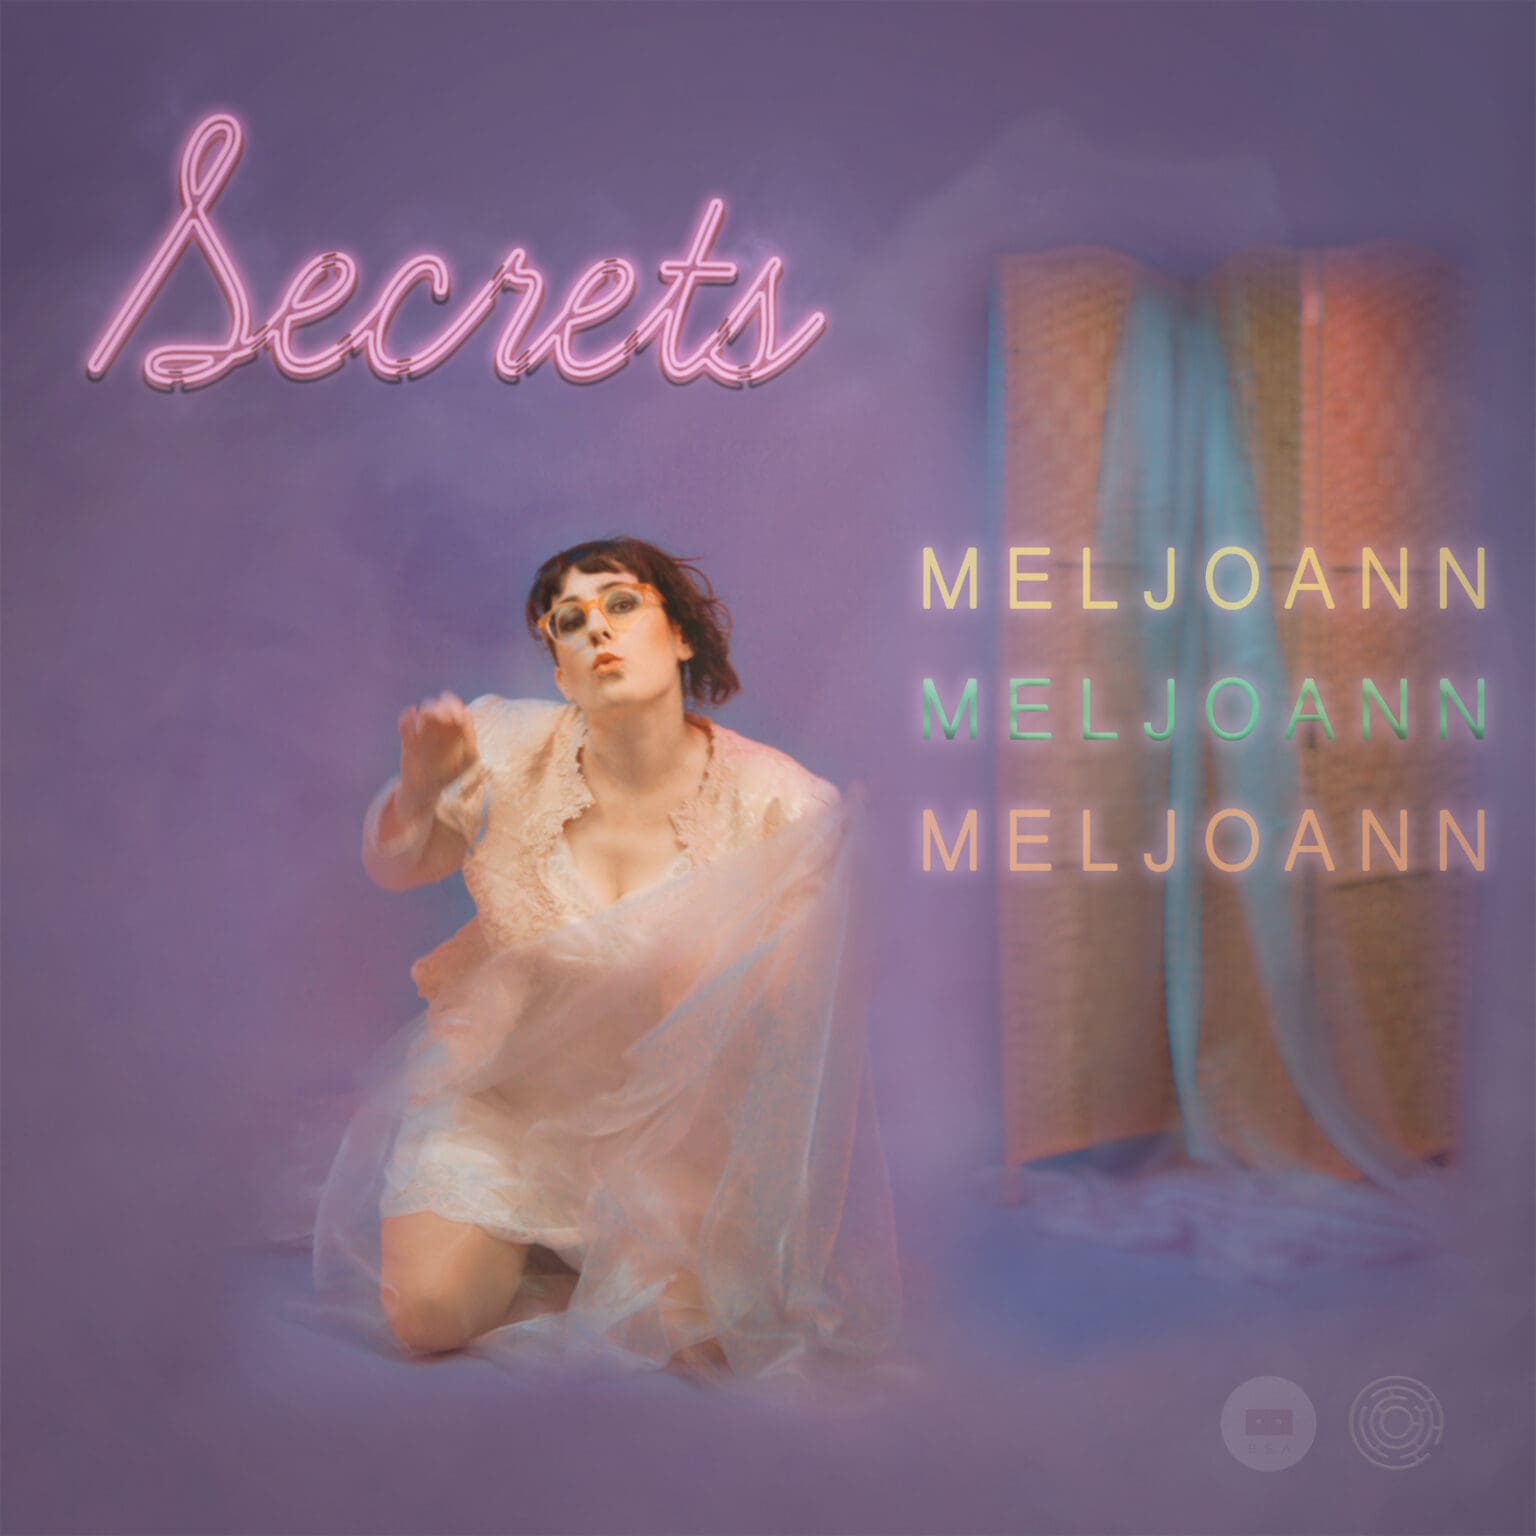 Secrets-Meljoann_singleAtwork-1536x1536 (1)-min